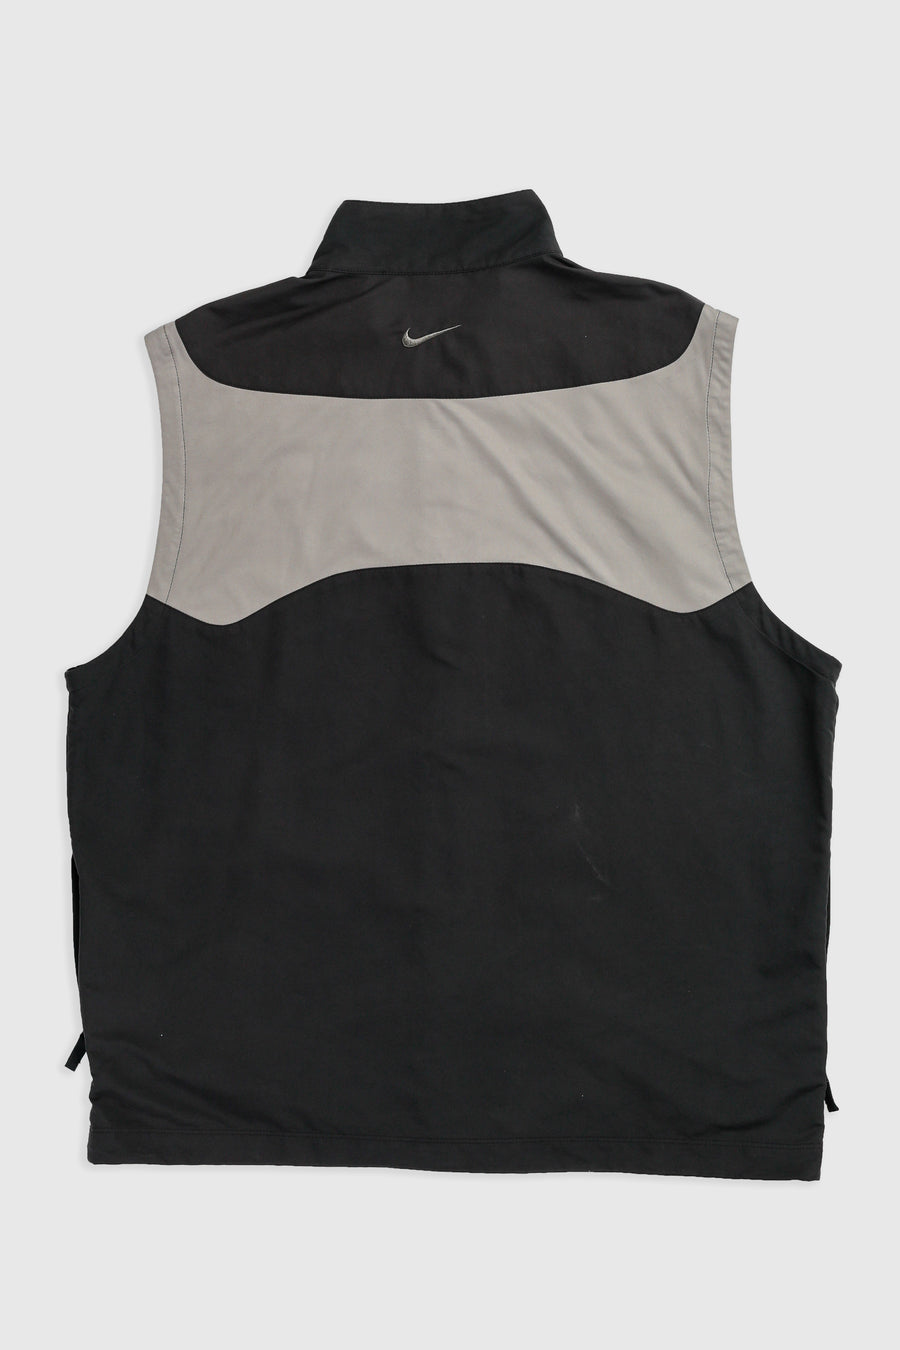 Vintage Nike Vest - XL